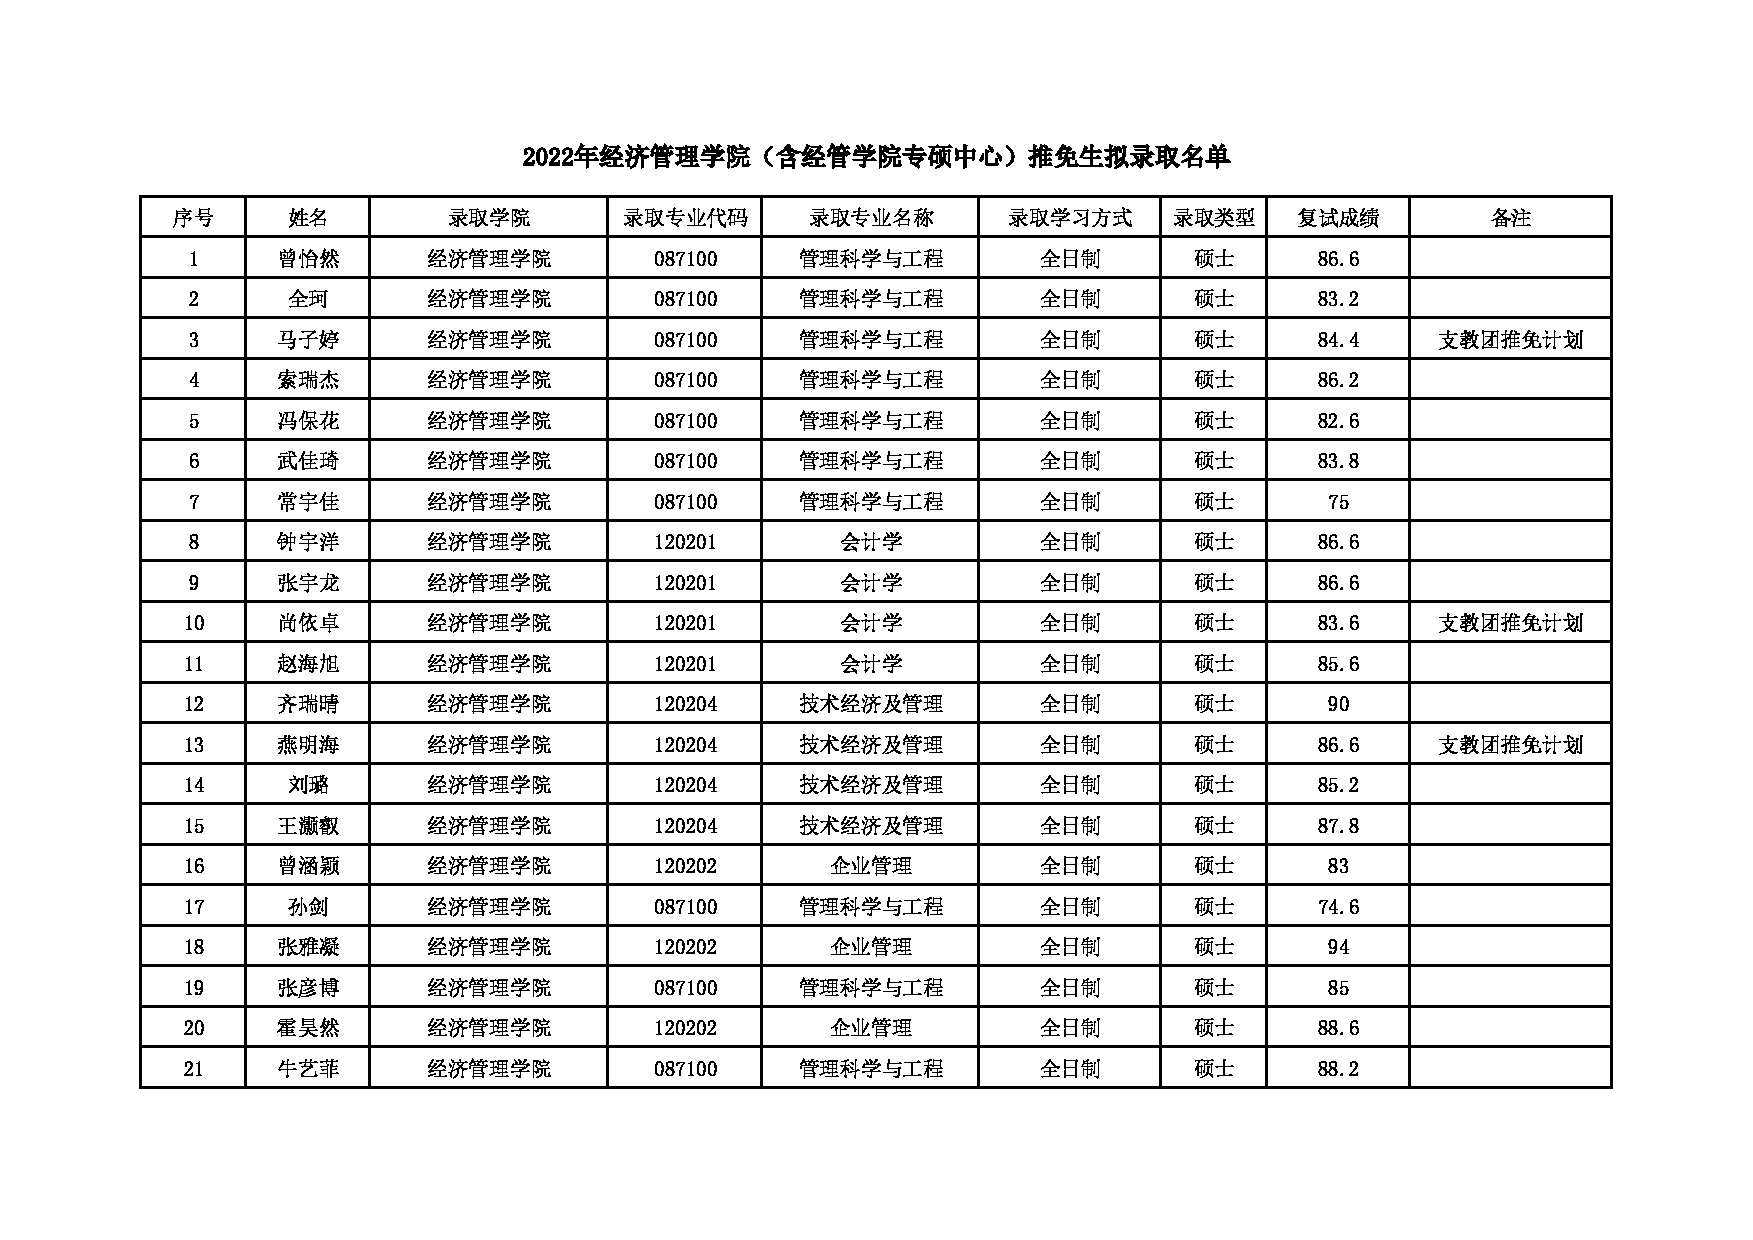 2022考研拟录取名单：北京化工大学2022年经济管理学院（含经管学院专硕中心）推免生拟录取名单 第1页